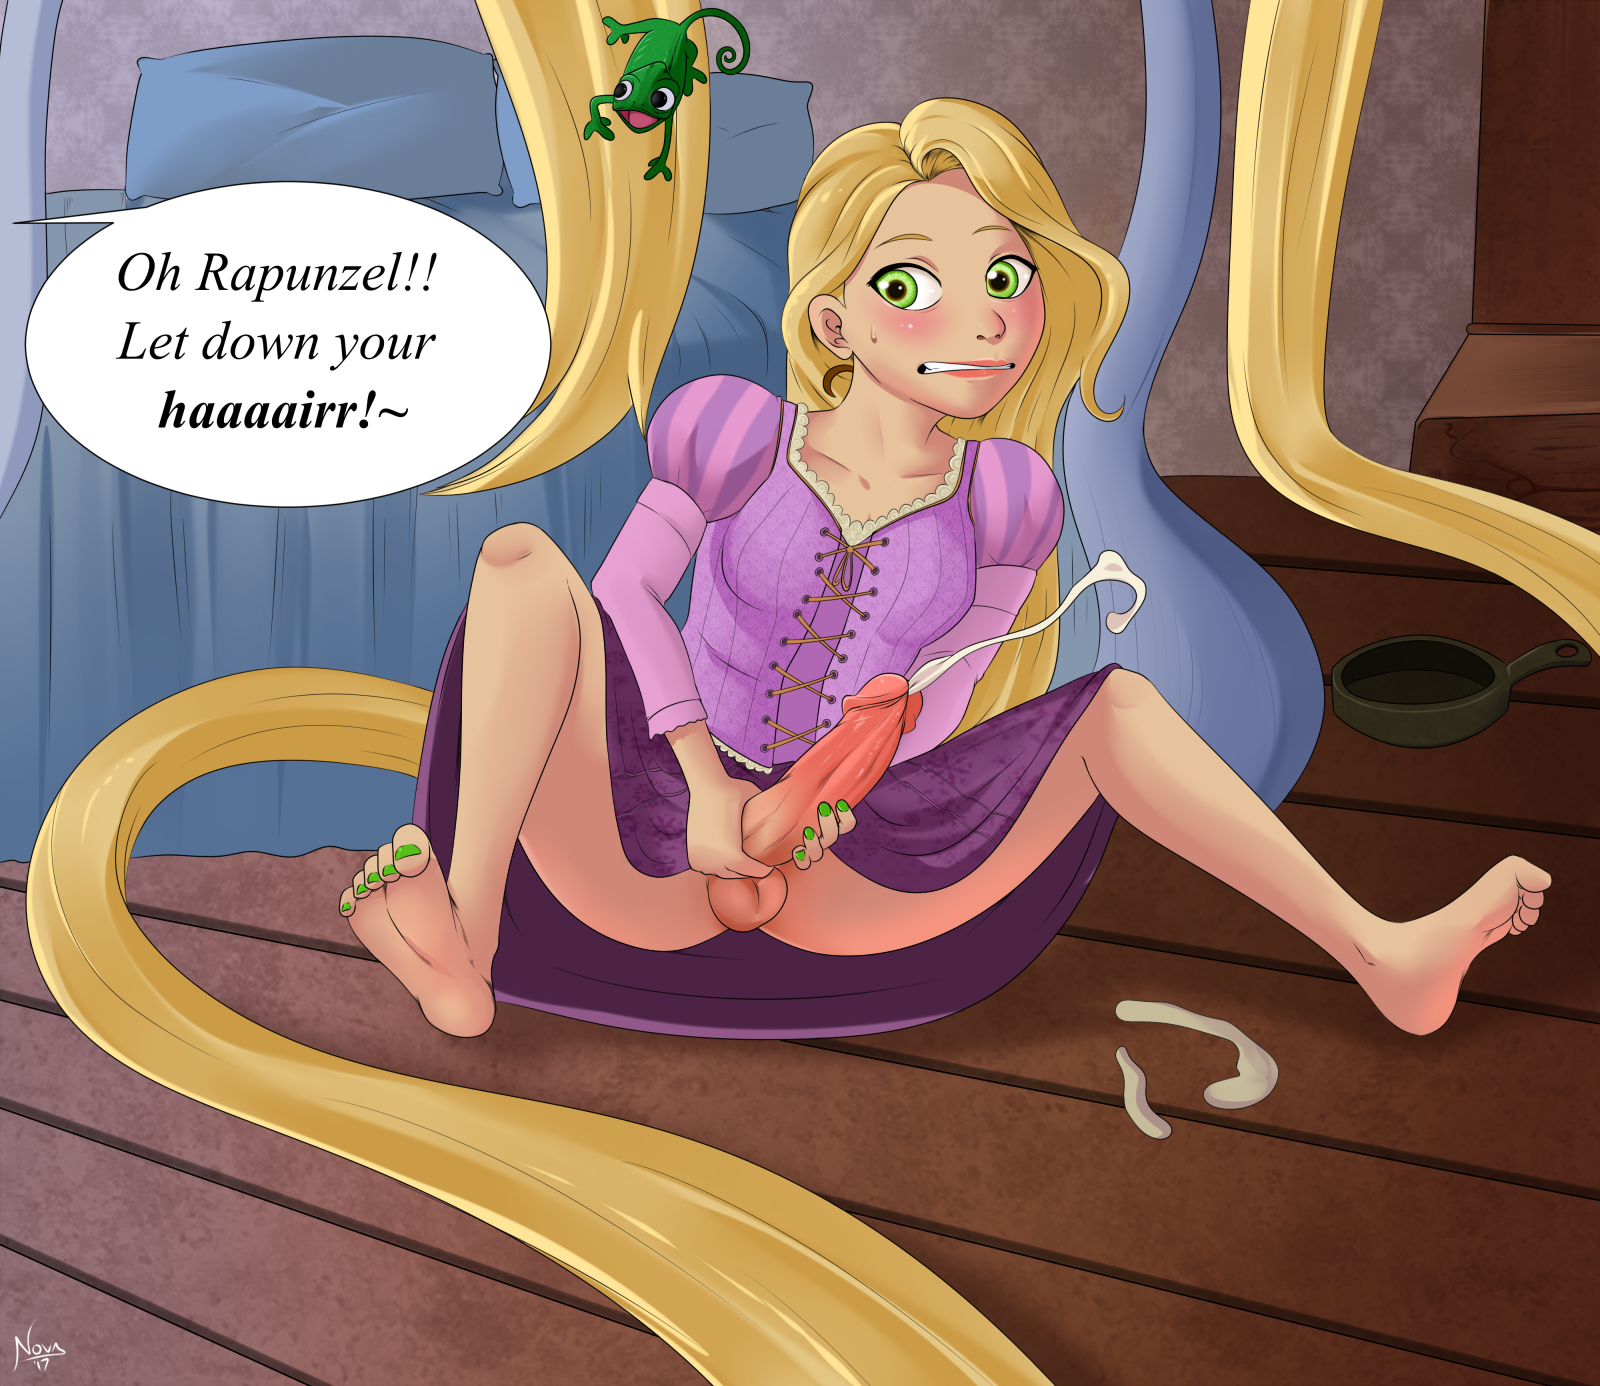 Hot C. recomended rapunzel futa